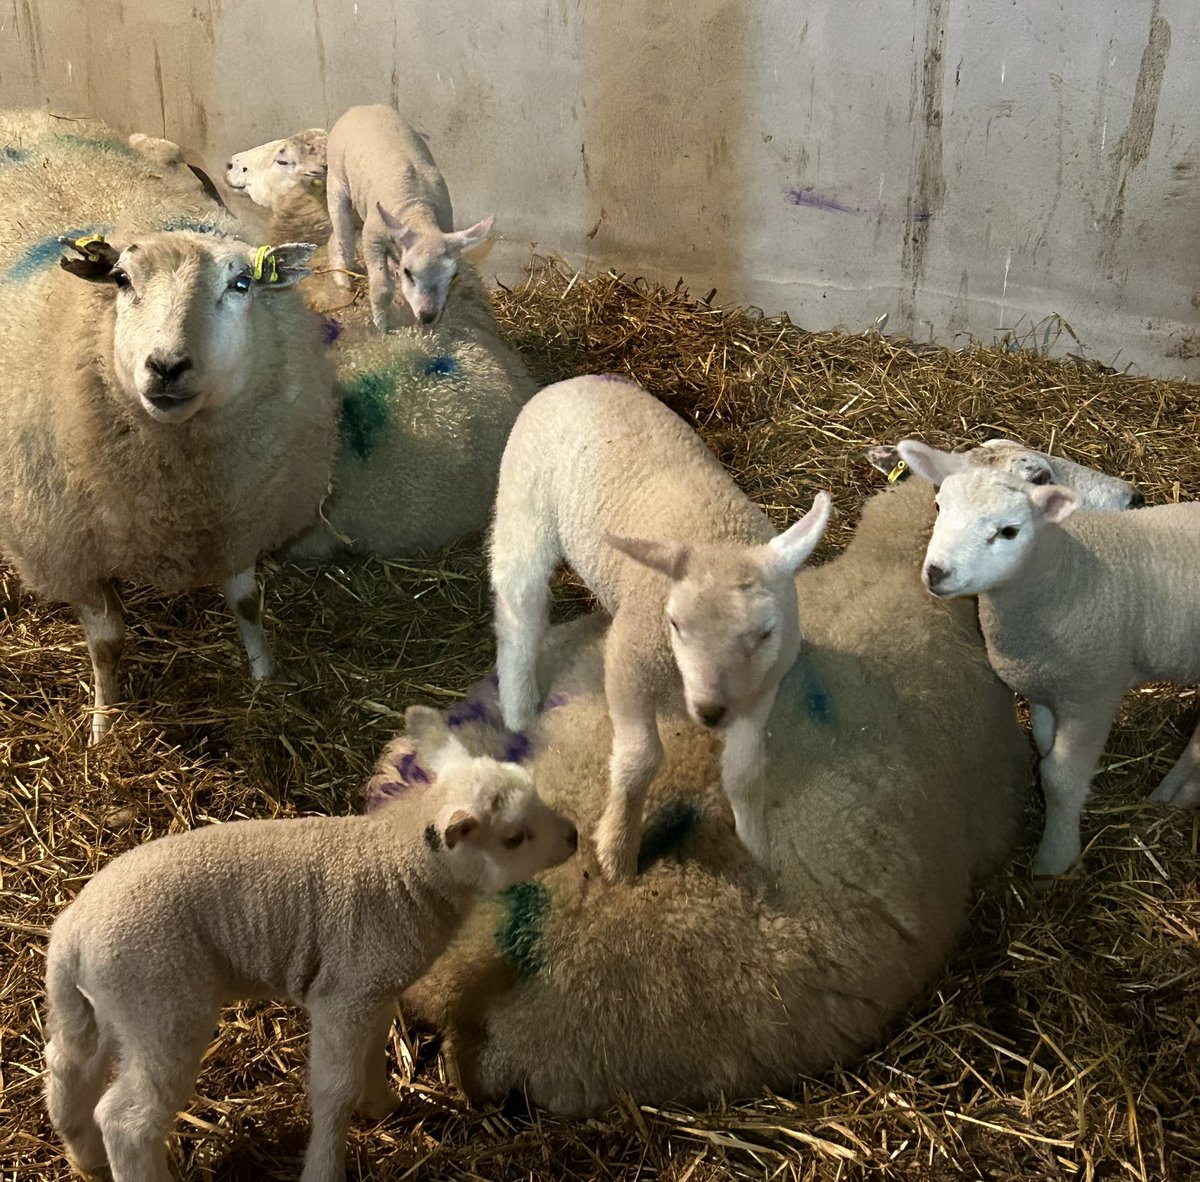 Lambing in full swing @knocknatullafarms #lambing #lambs #belclaresheep #belclare #organic #biodynamic #biodynamicagriculture #irishorganicassociation #irishorganicfarming